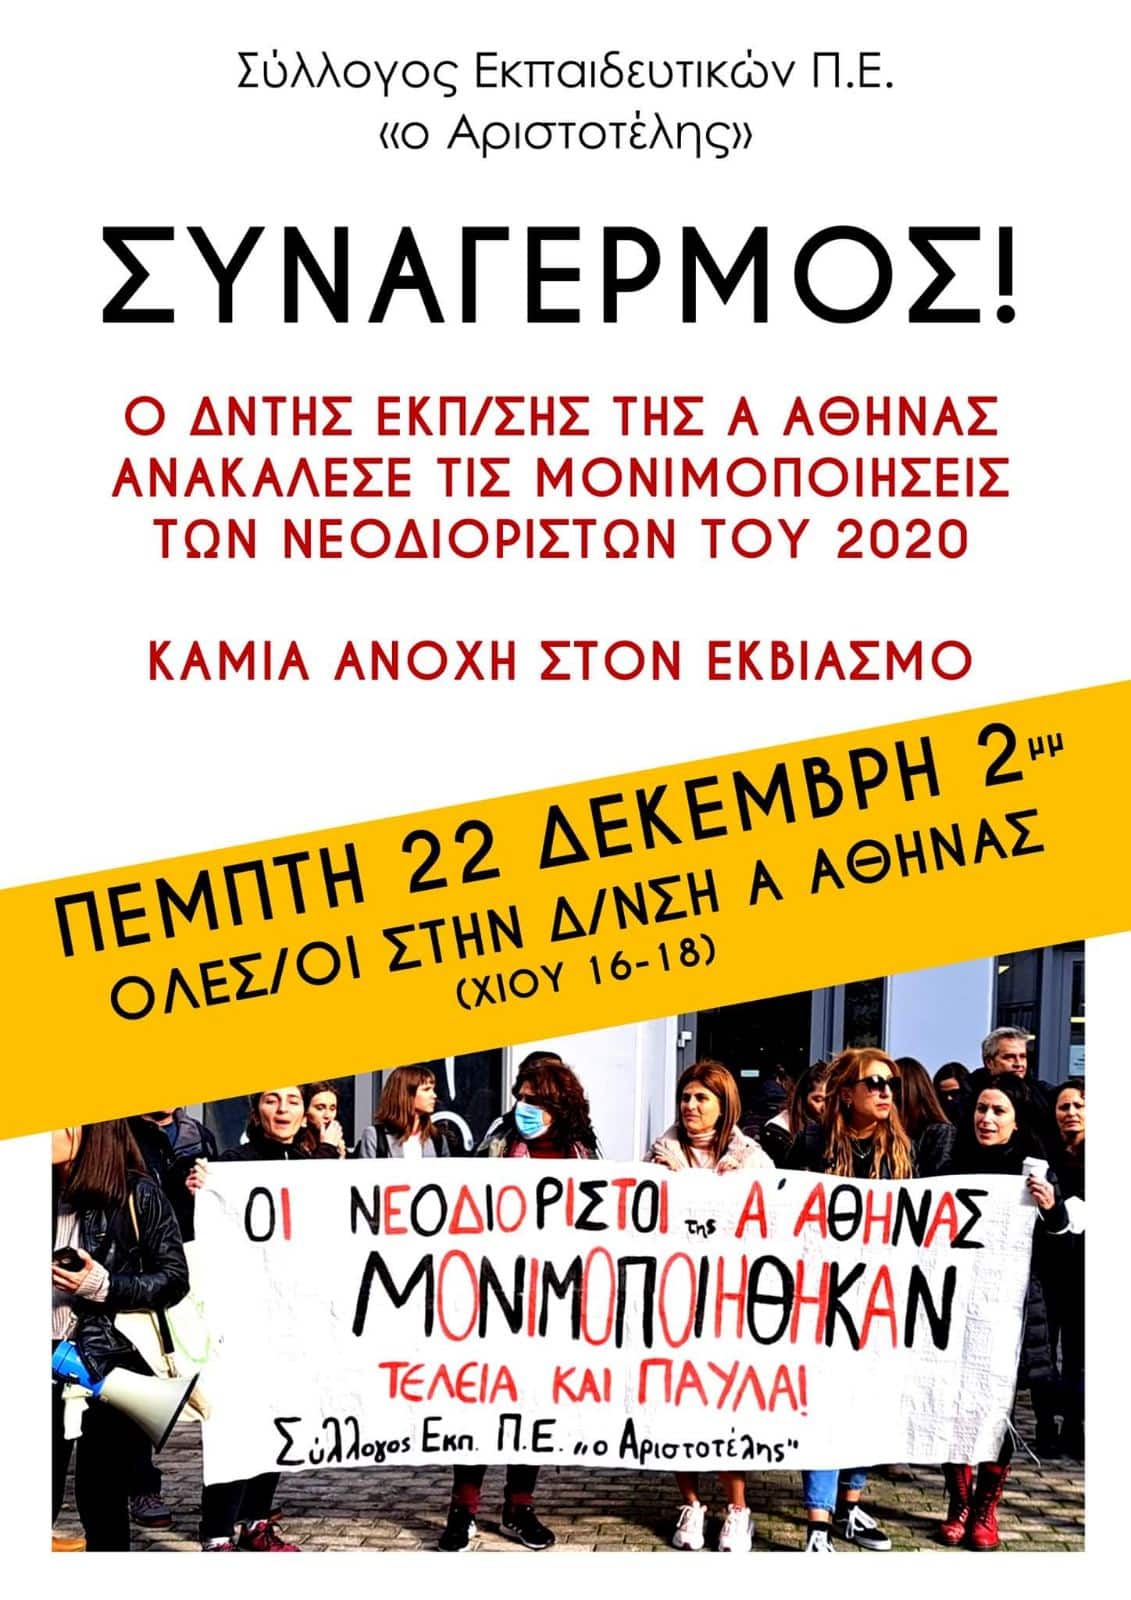 Μένος του ΥΠΑΙΘ απέναντι στους νεοδιόριστους-Με απόφαση που κρατούσαν κρυφή στην Α Αθήνας ανακαλούν τις μονιμοποιήσεις